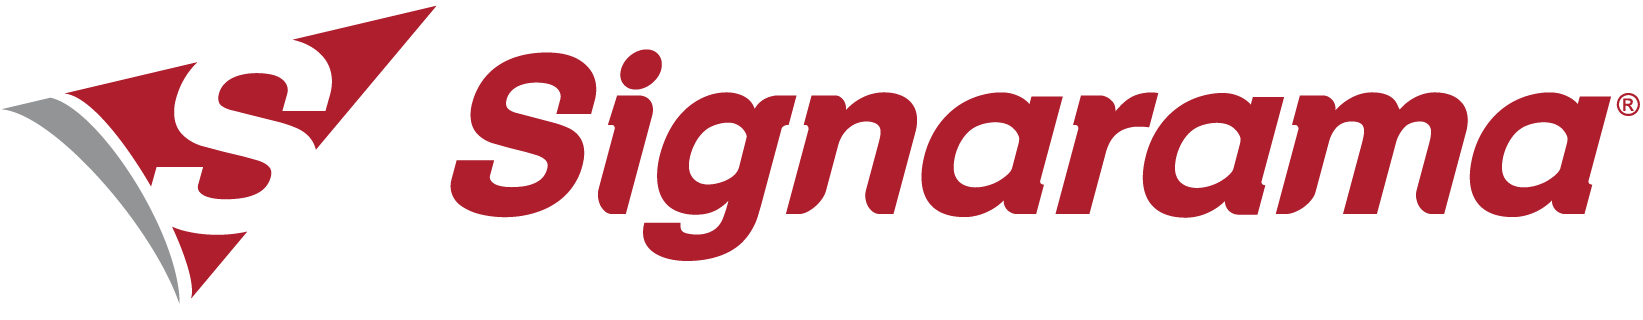 signarama-new-logo